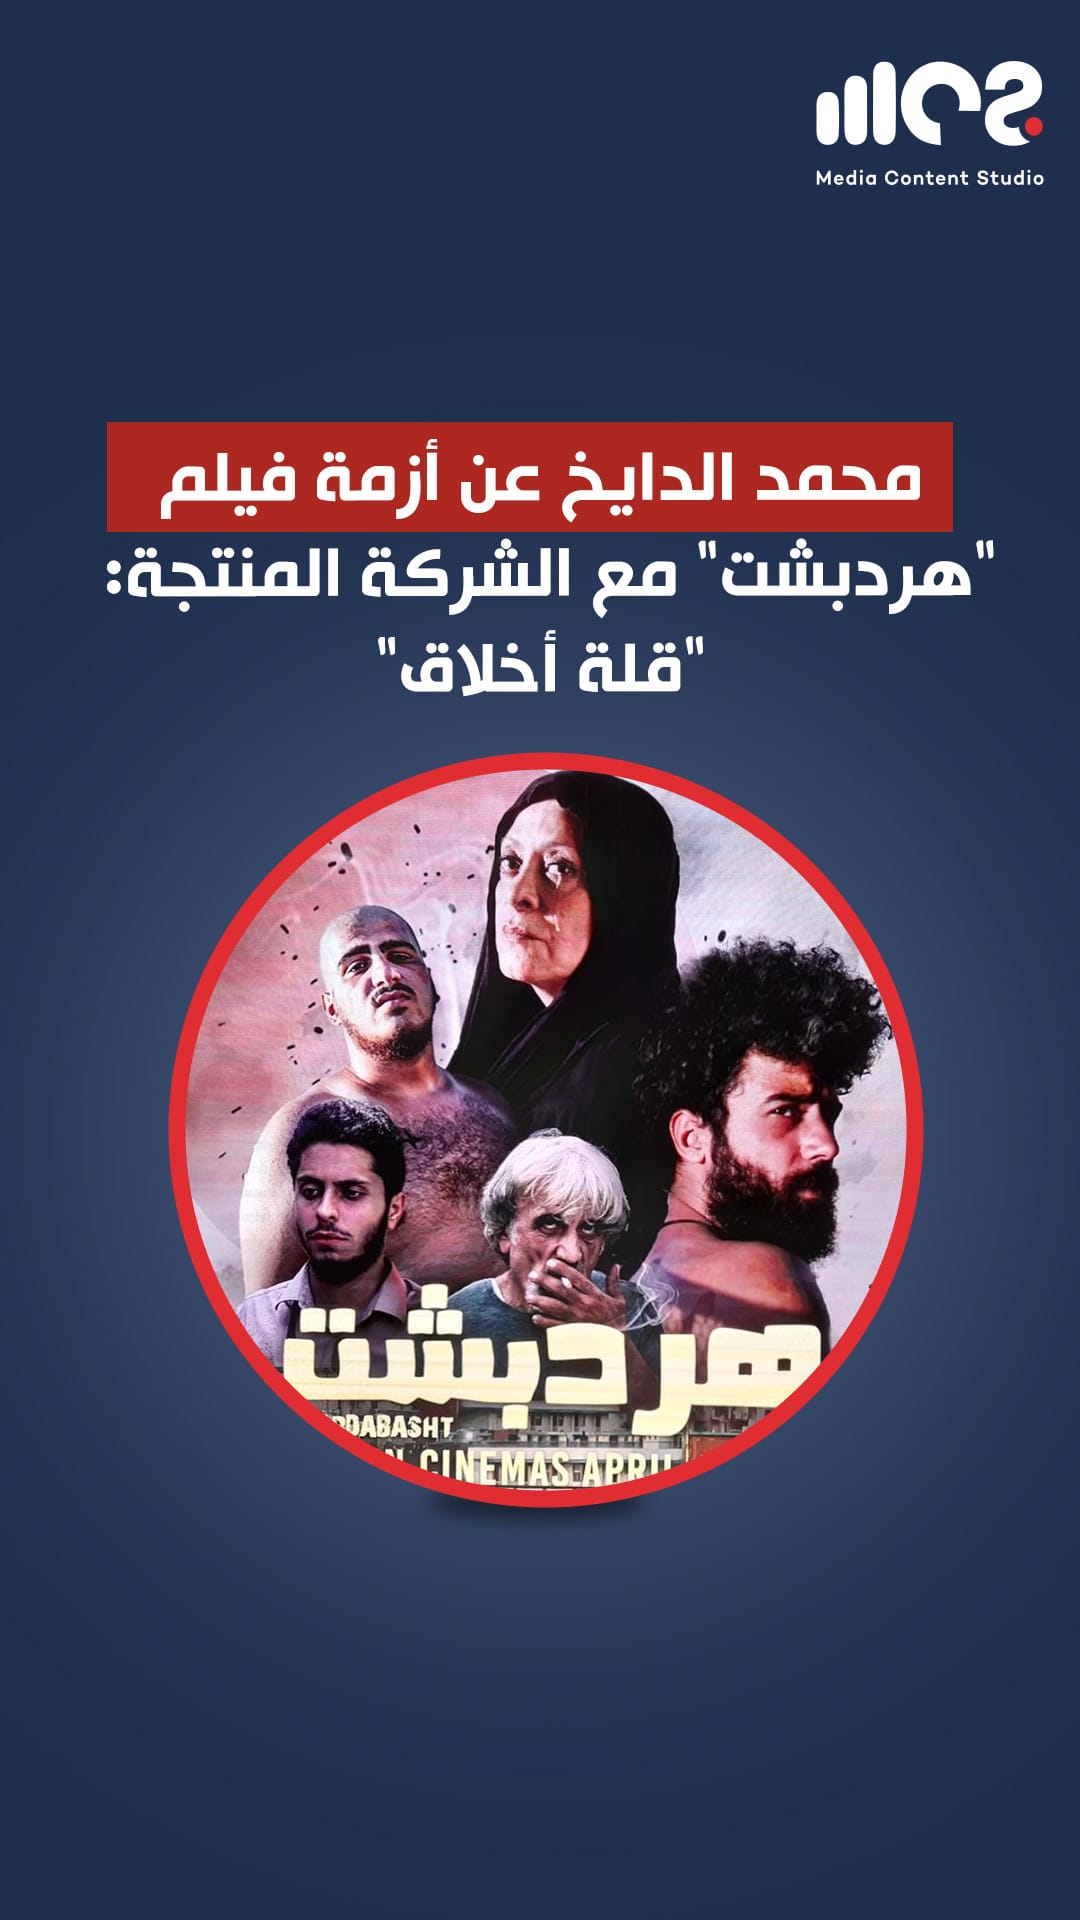 محمد الدايخ عن أزمة فيلم هردبشت مع الشركة المنتجة: قلة أخلاق